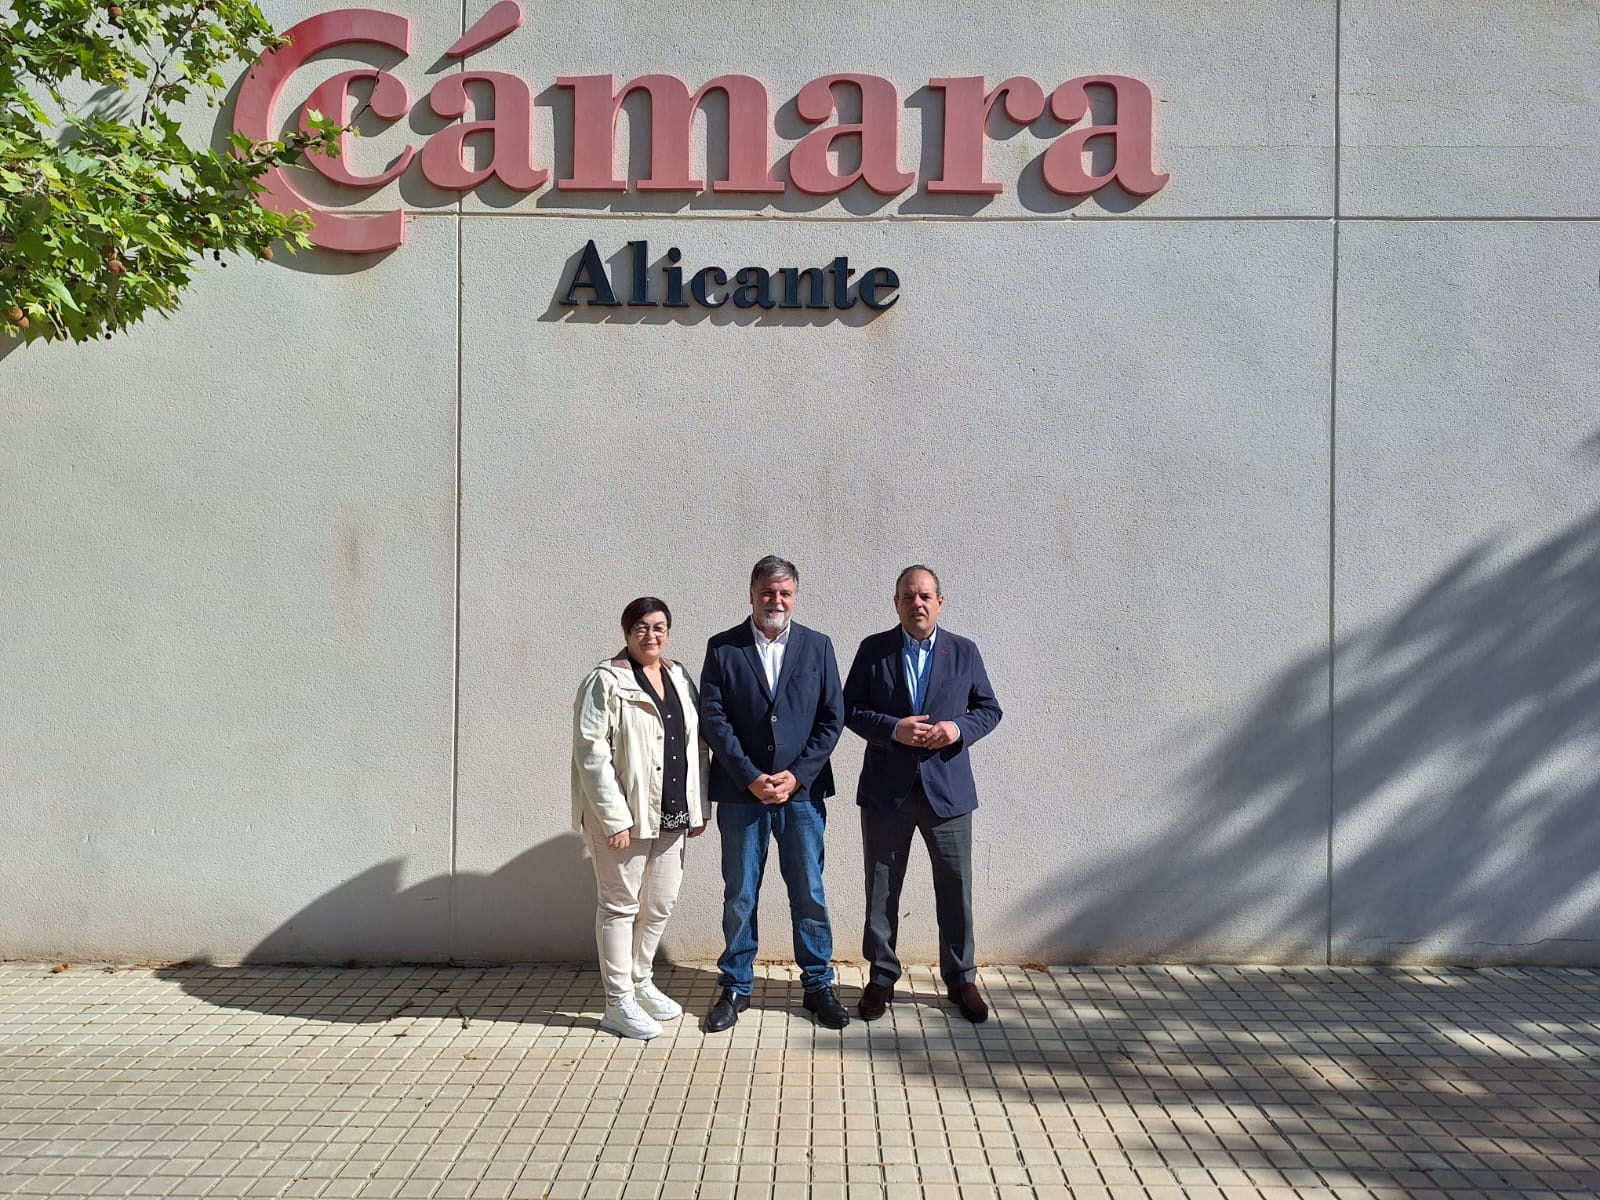 La Cámara de Alicante y el ayuntamiento de Villena acuerdan un plan para reactivar el Vivero de Empresas